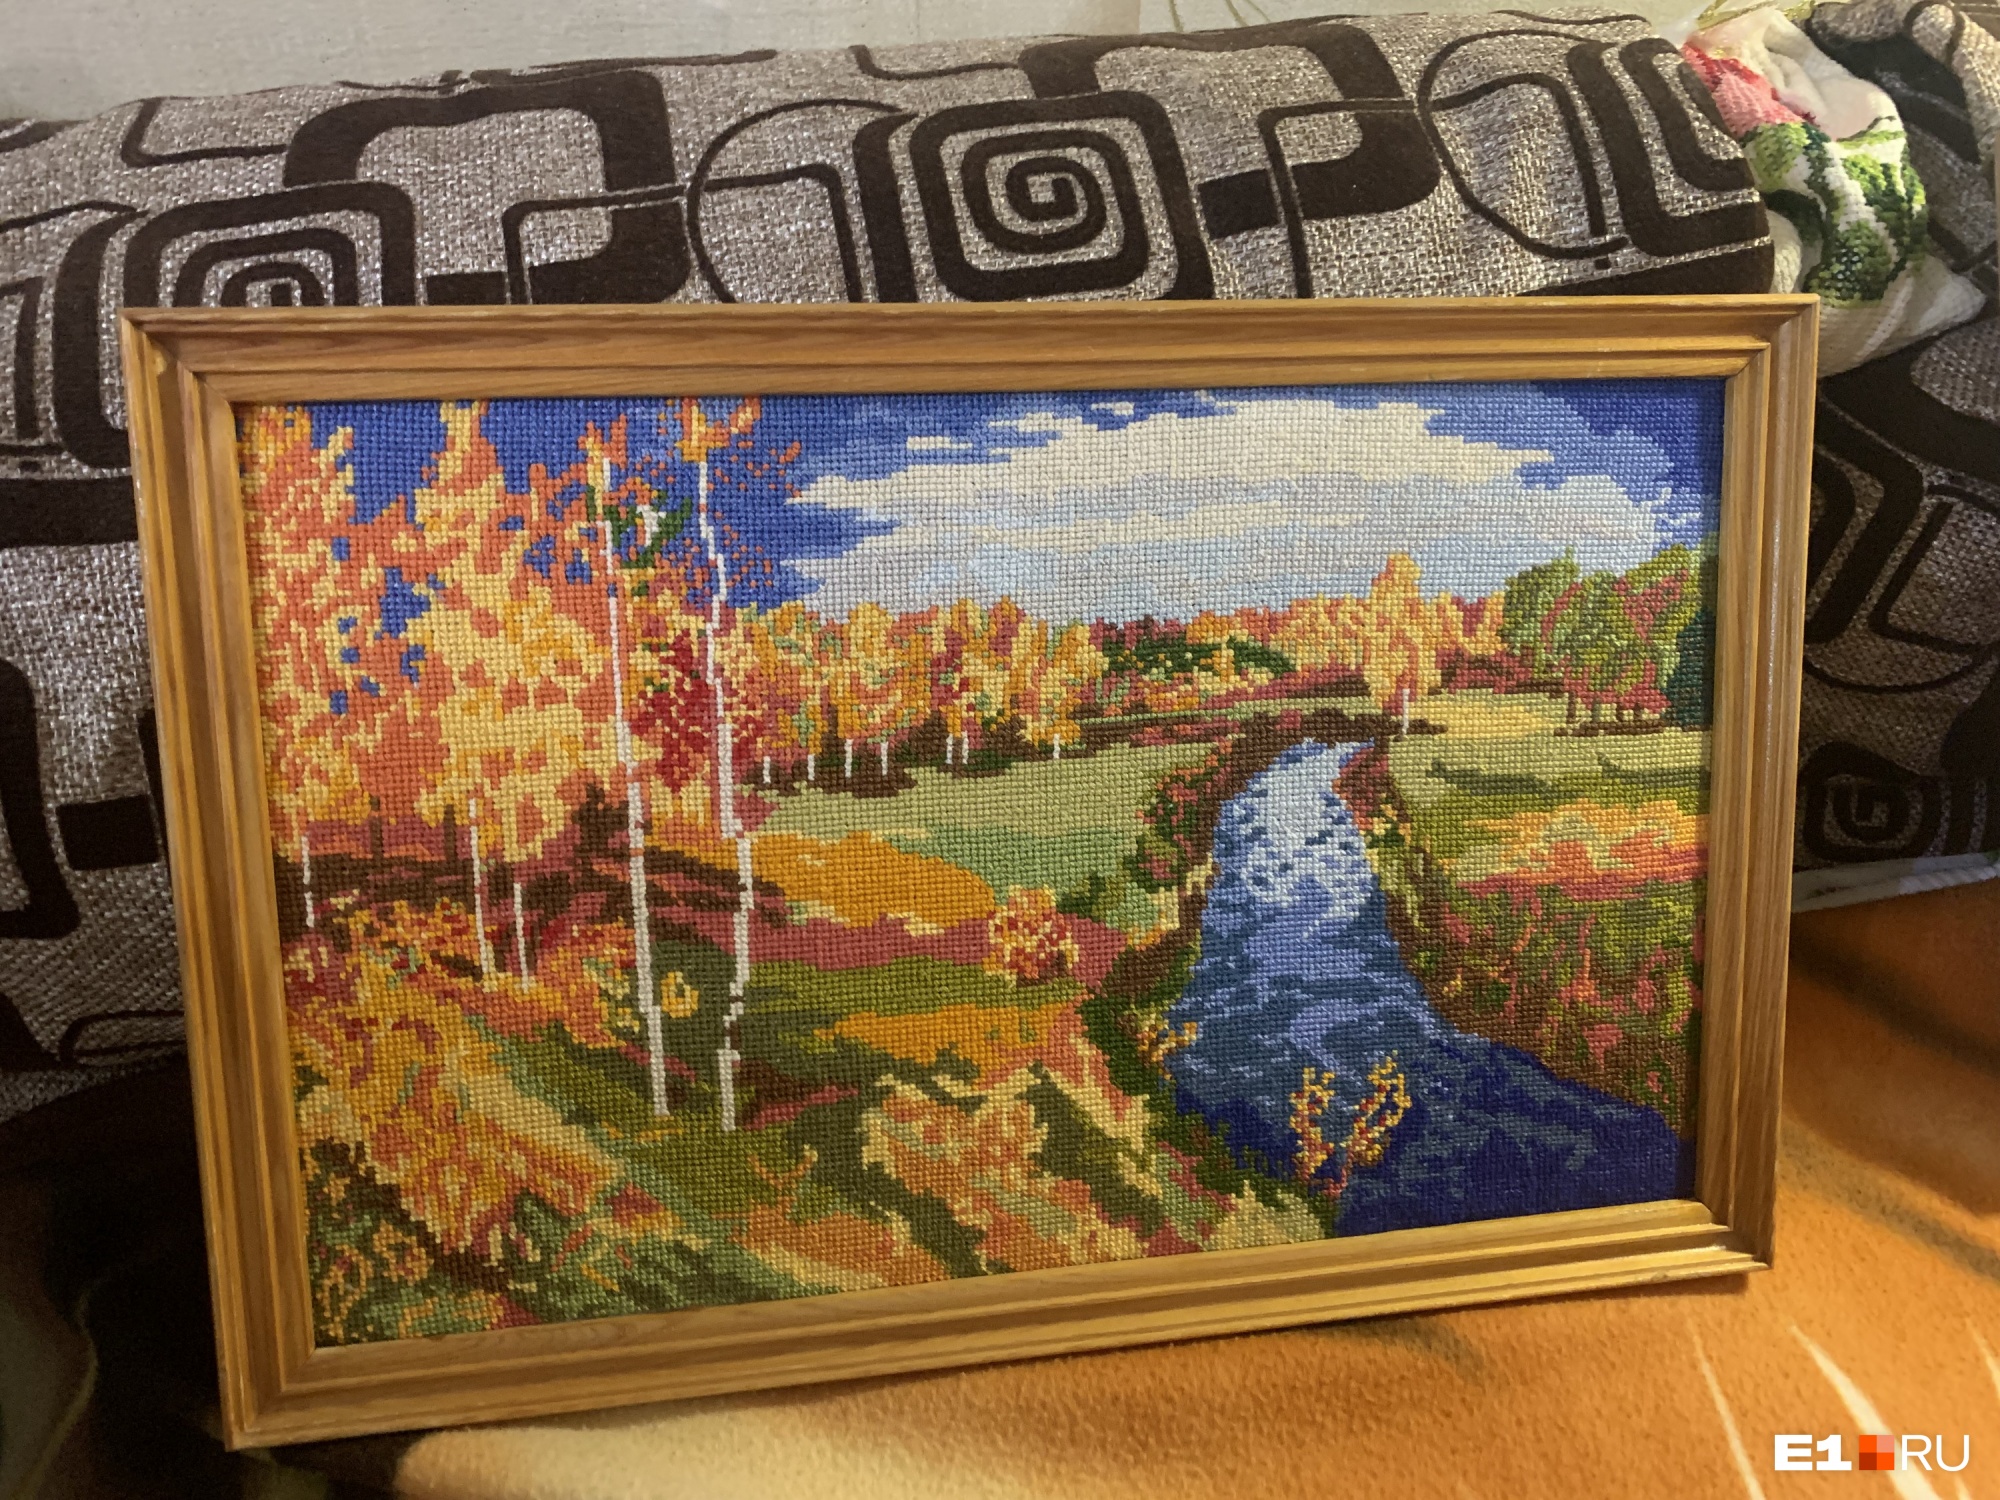 А это пейзаж Исаака Левитана «Золотая осень»